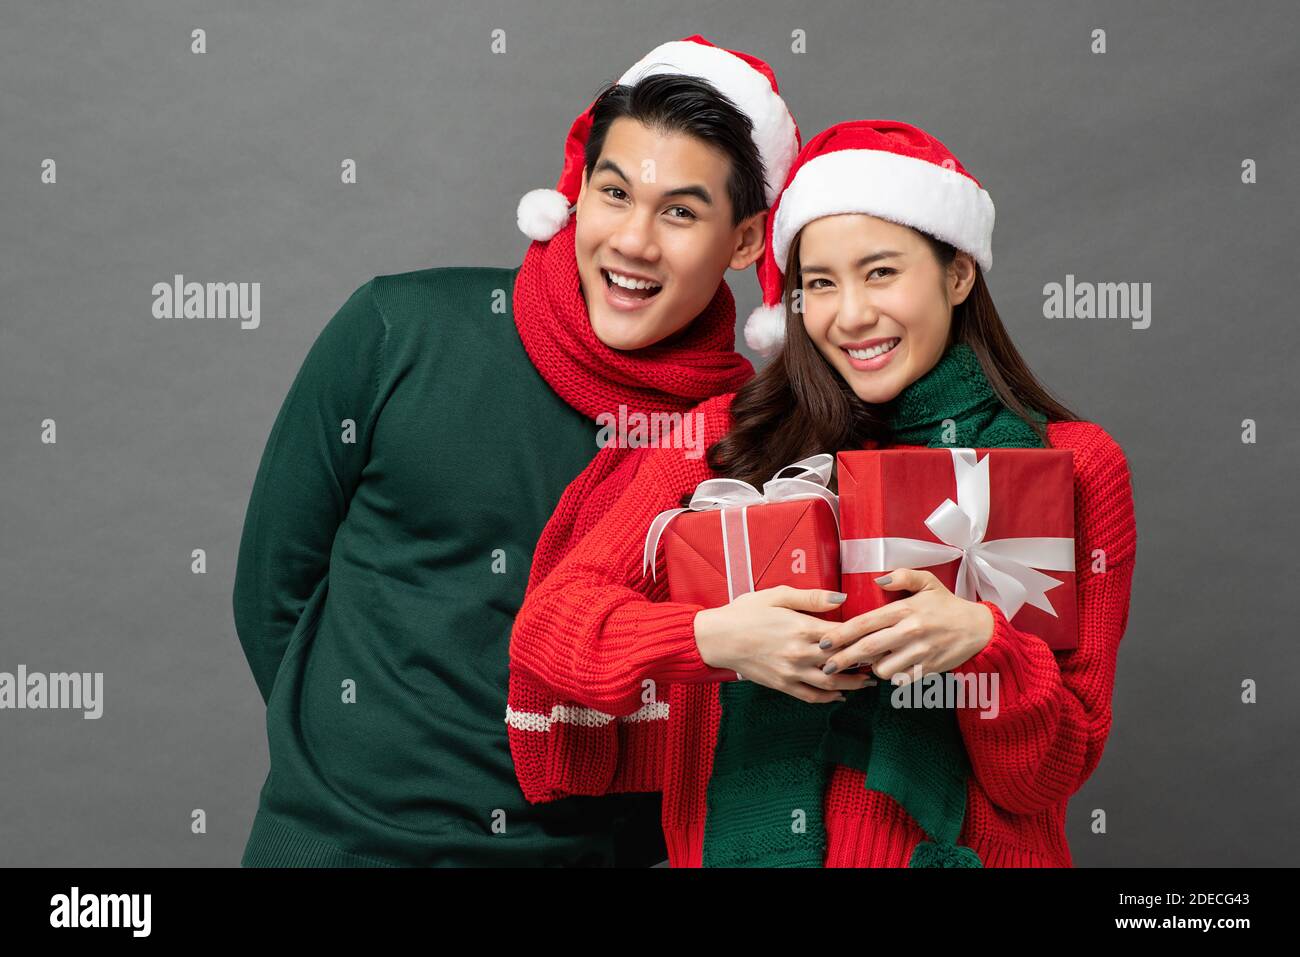 Glücklich lächelnd junge asiatische Paar trägt bunte rot und grün Pullover mit Weihnachts-Geschenkboxen Studio auf grauem Hintergrund aufgenommen Stockfoto